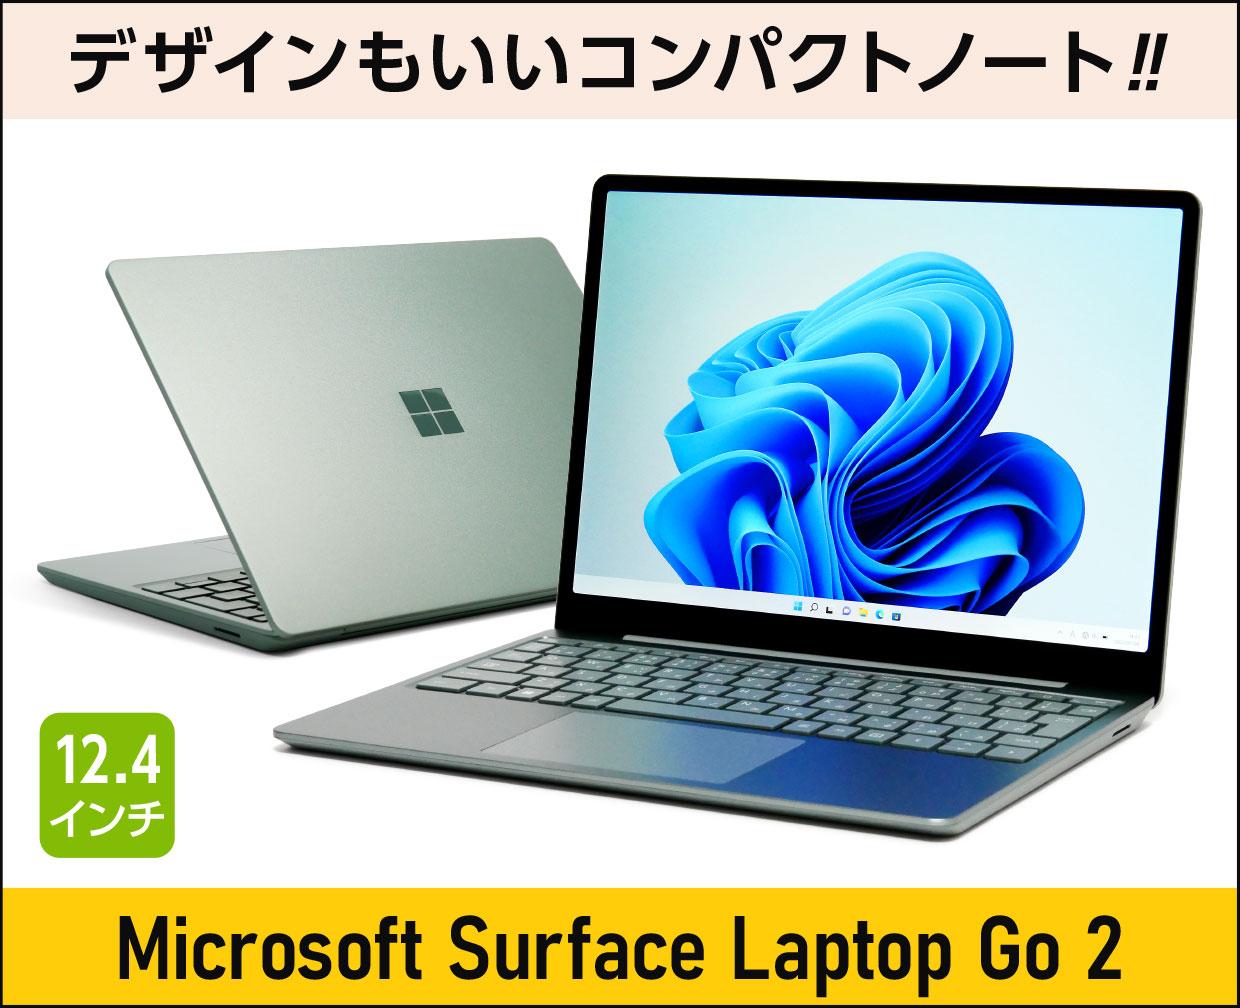 マイクロソフト Surface Laptop Go 2のメイン画像